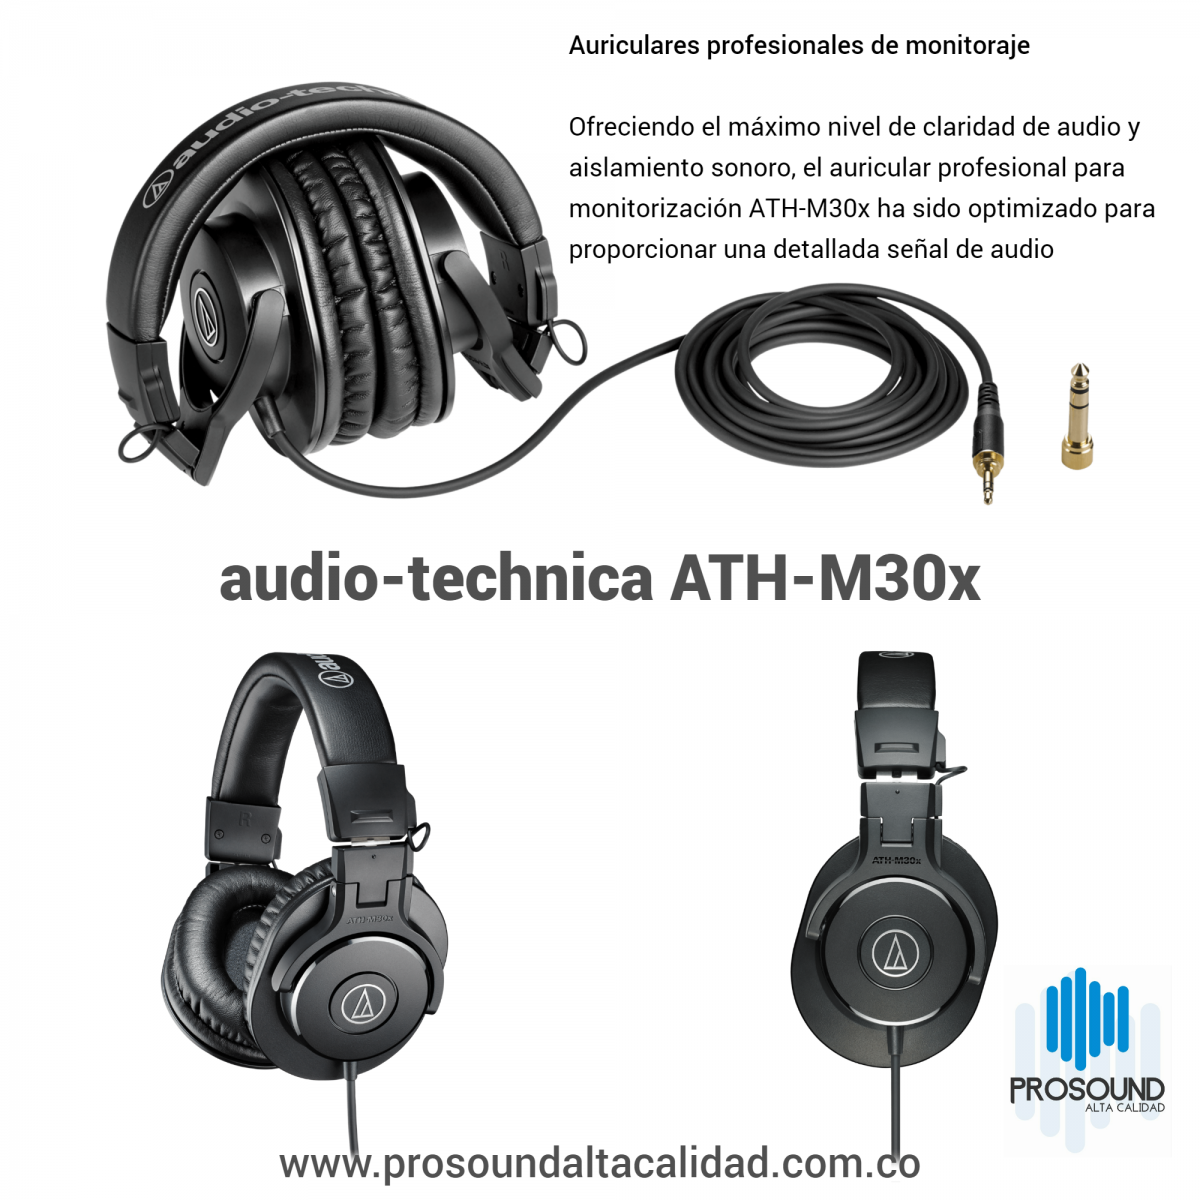 Audio-Technica ATH-M40X Auriculares de Estudio Cerrados